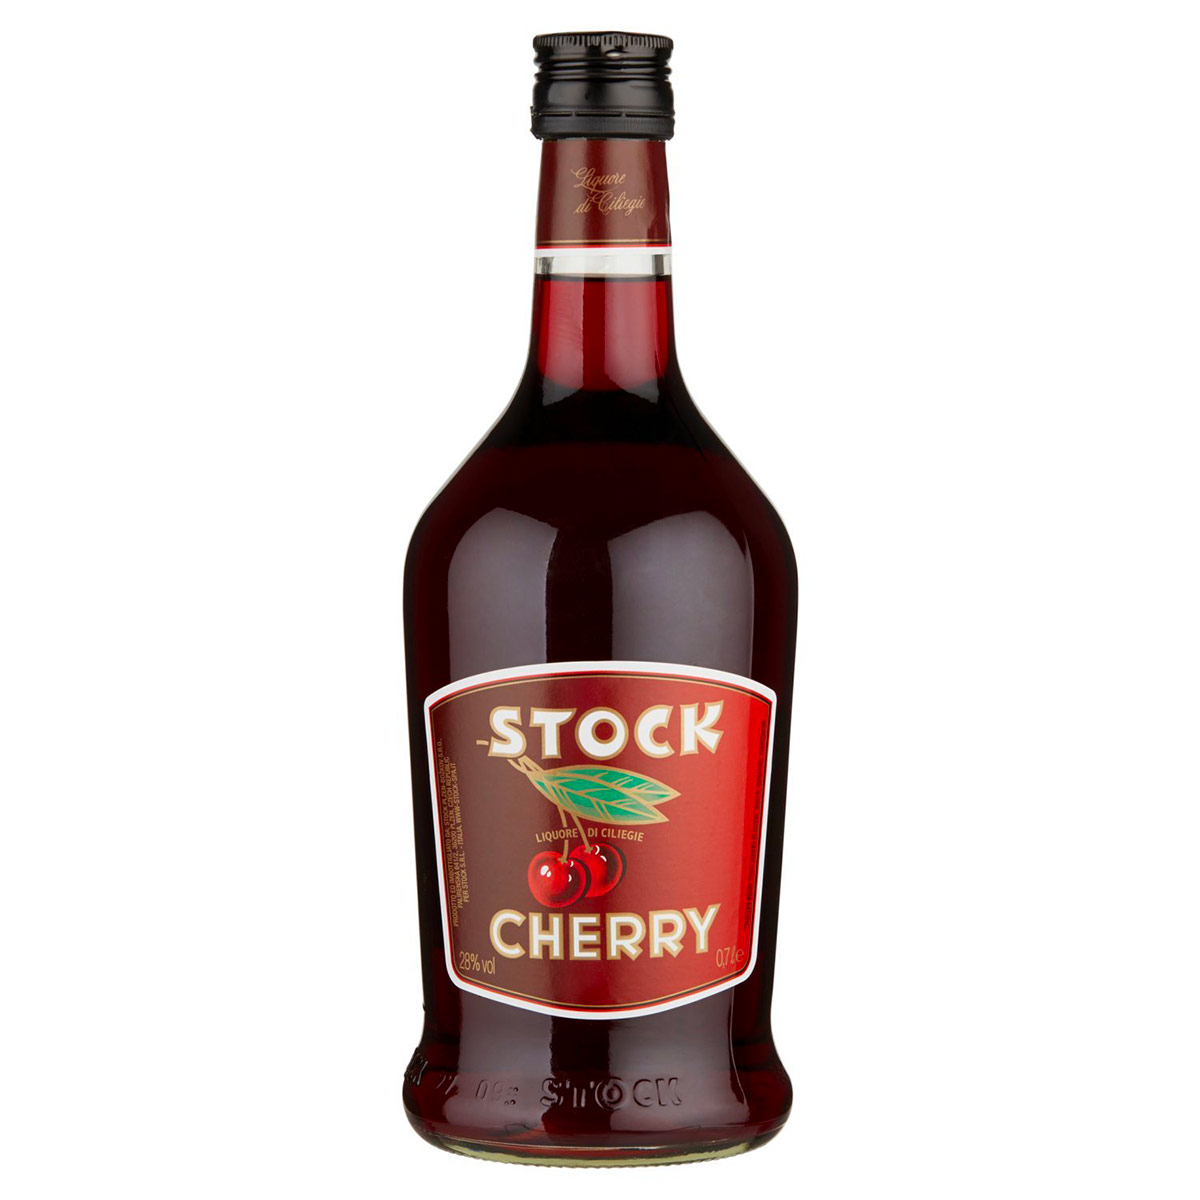 Cherry Stock